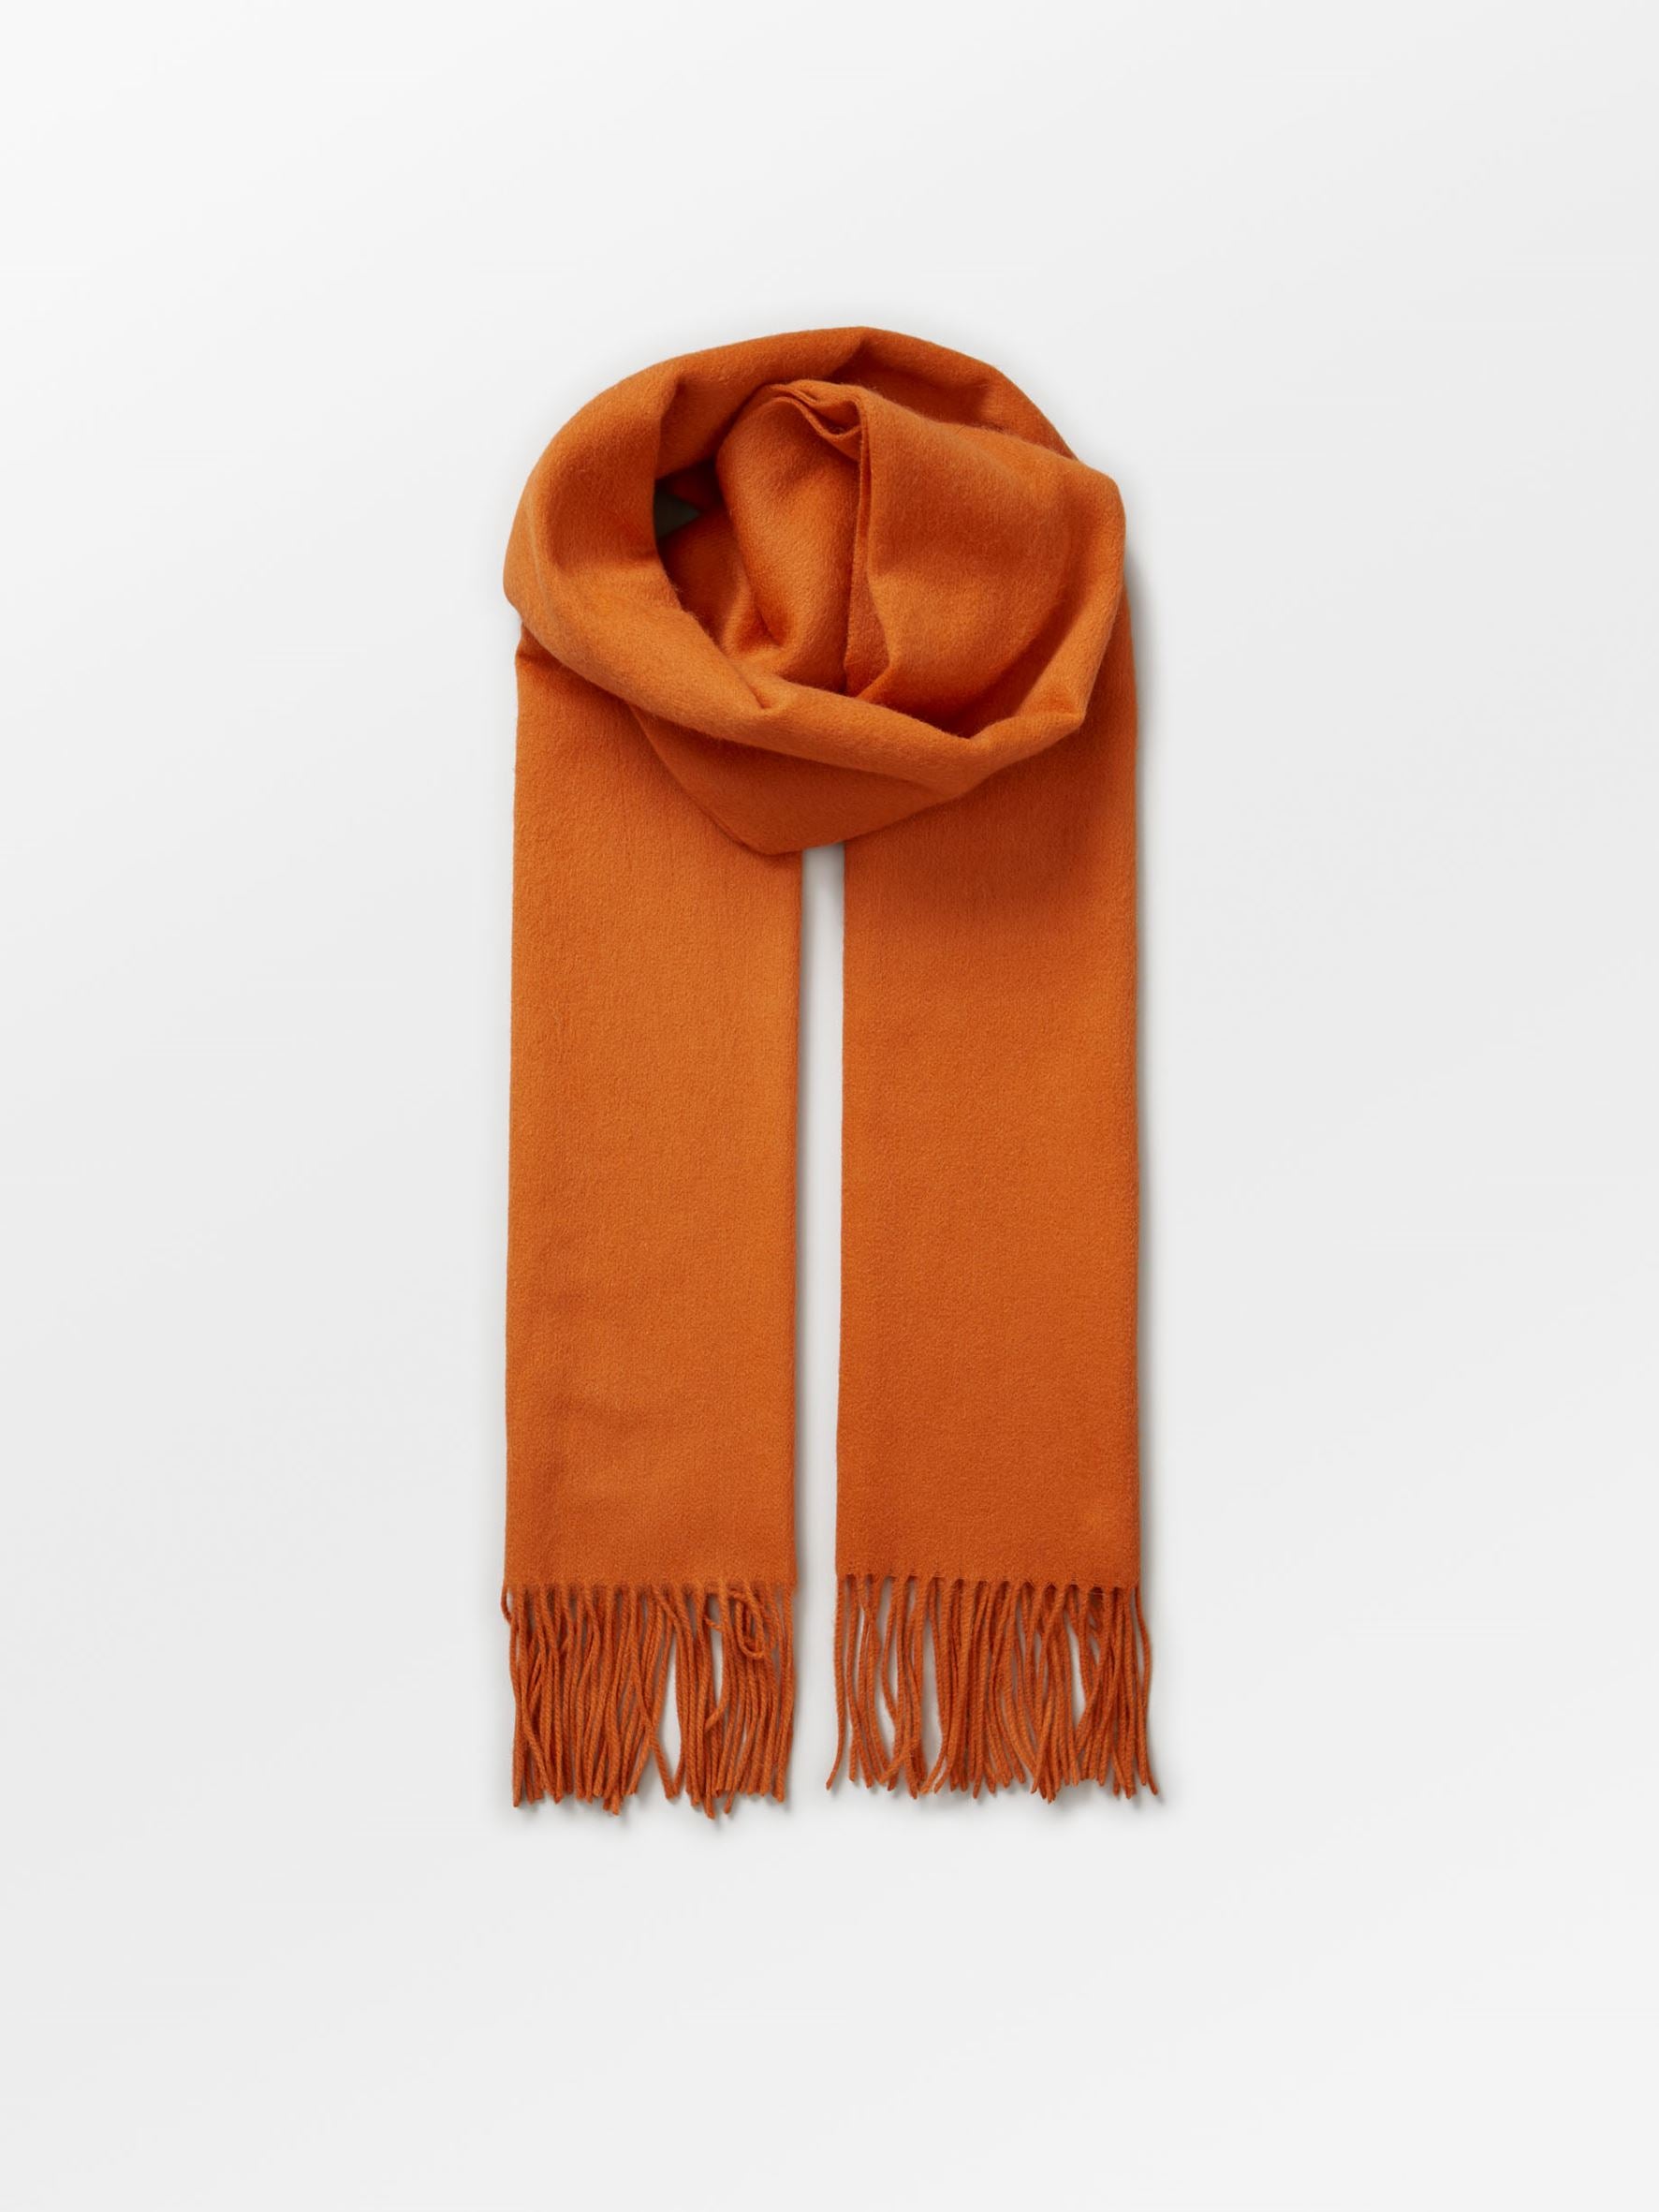 Becksöndergaard, Crystal Edition Scarf - Orange, scarves, scarves, gifts